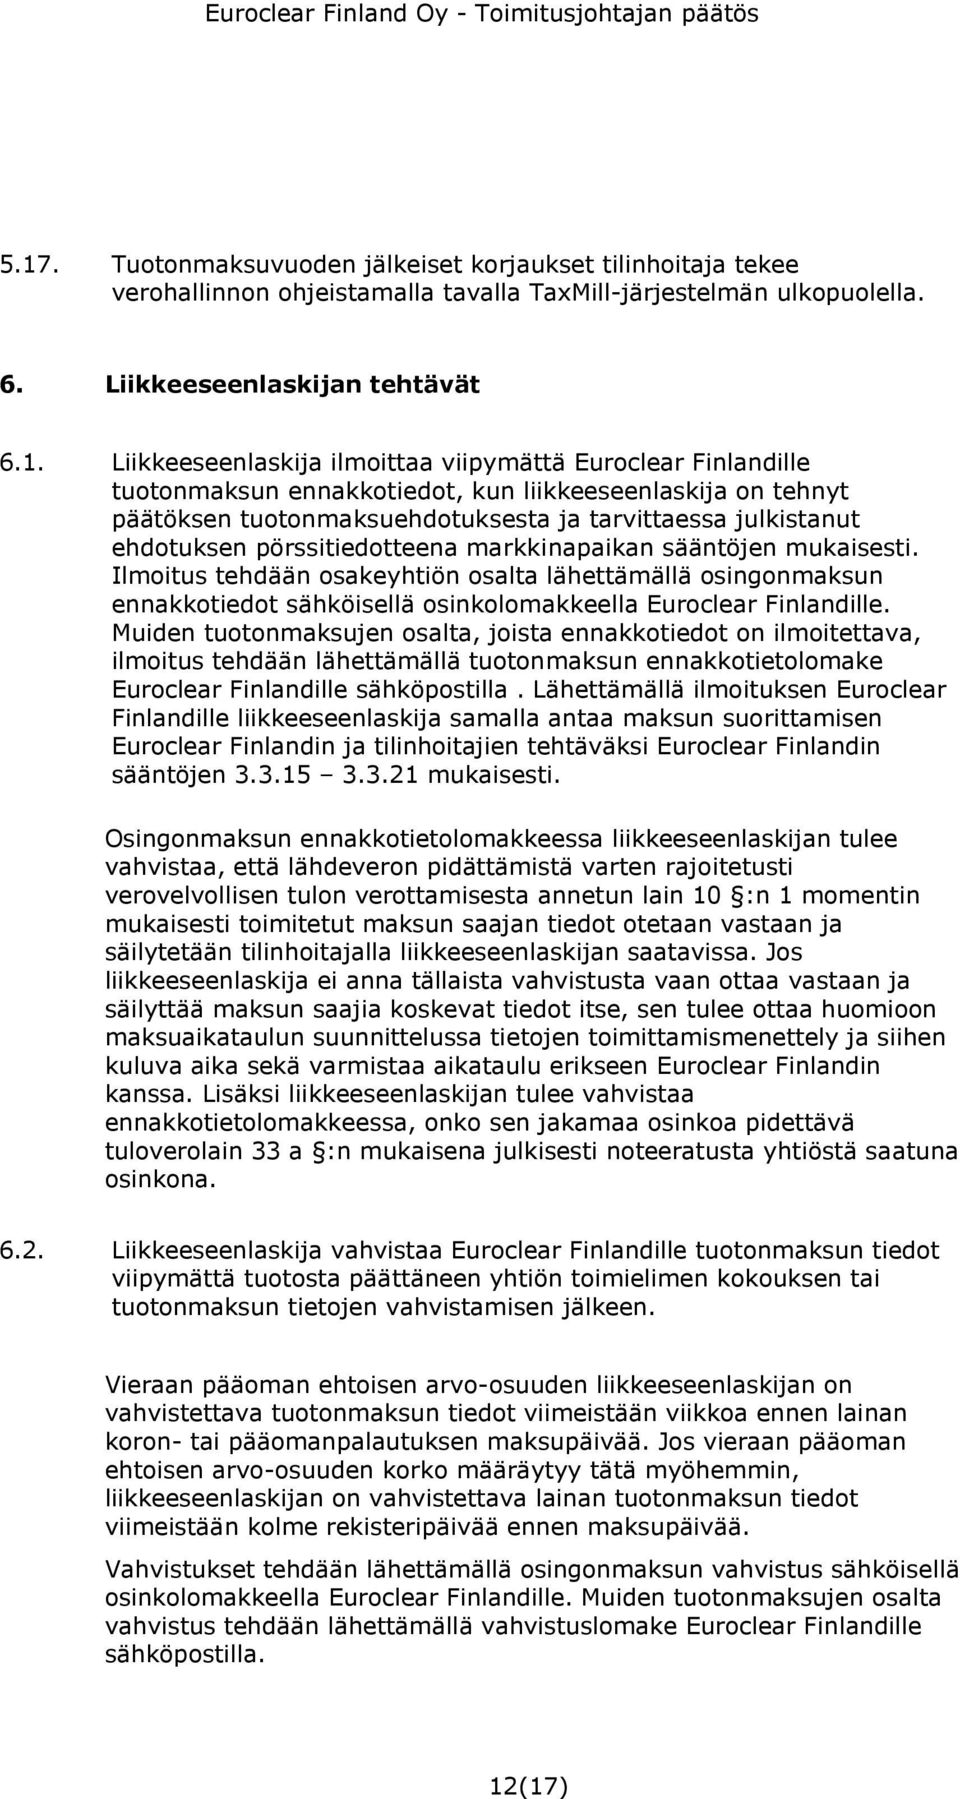 markkinapaikan sääntöjen mukaisesti. Ilmoitus tehdään osakeyhtiön osalta lähettämällä osingonmaksun ennakkotiedot sähköisellä osinkolomakkeella Euroclear Finlandille.